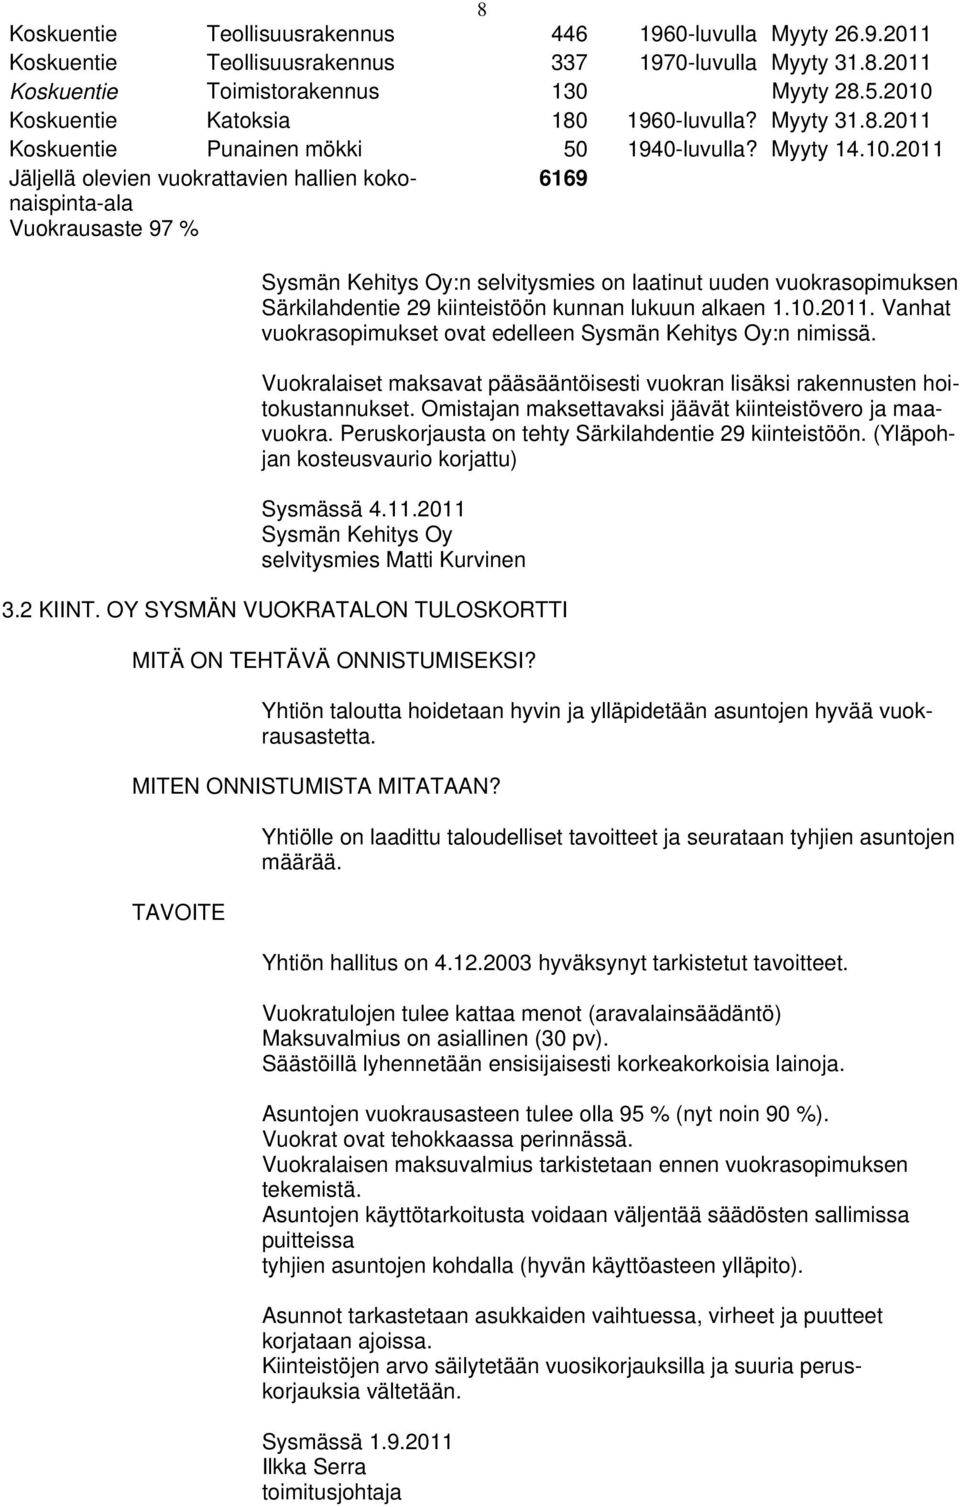 Sysmän Kehitys Oy:n selvitysmies on laatinut uuden vuokrasopimuksen Särkilahdentie 29 kiinteistöön kunnan lukuun alkaen 1.10.2011. Vanhat vuokrasopimukset ovat edelleen Sysmän Kehitys Oy:n nimissä.